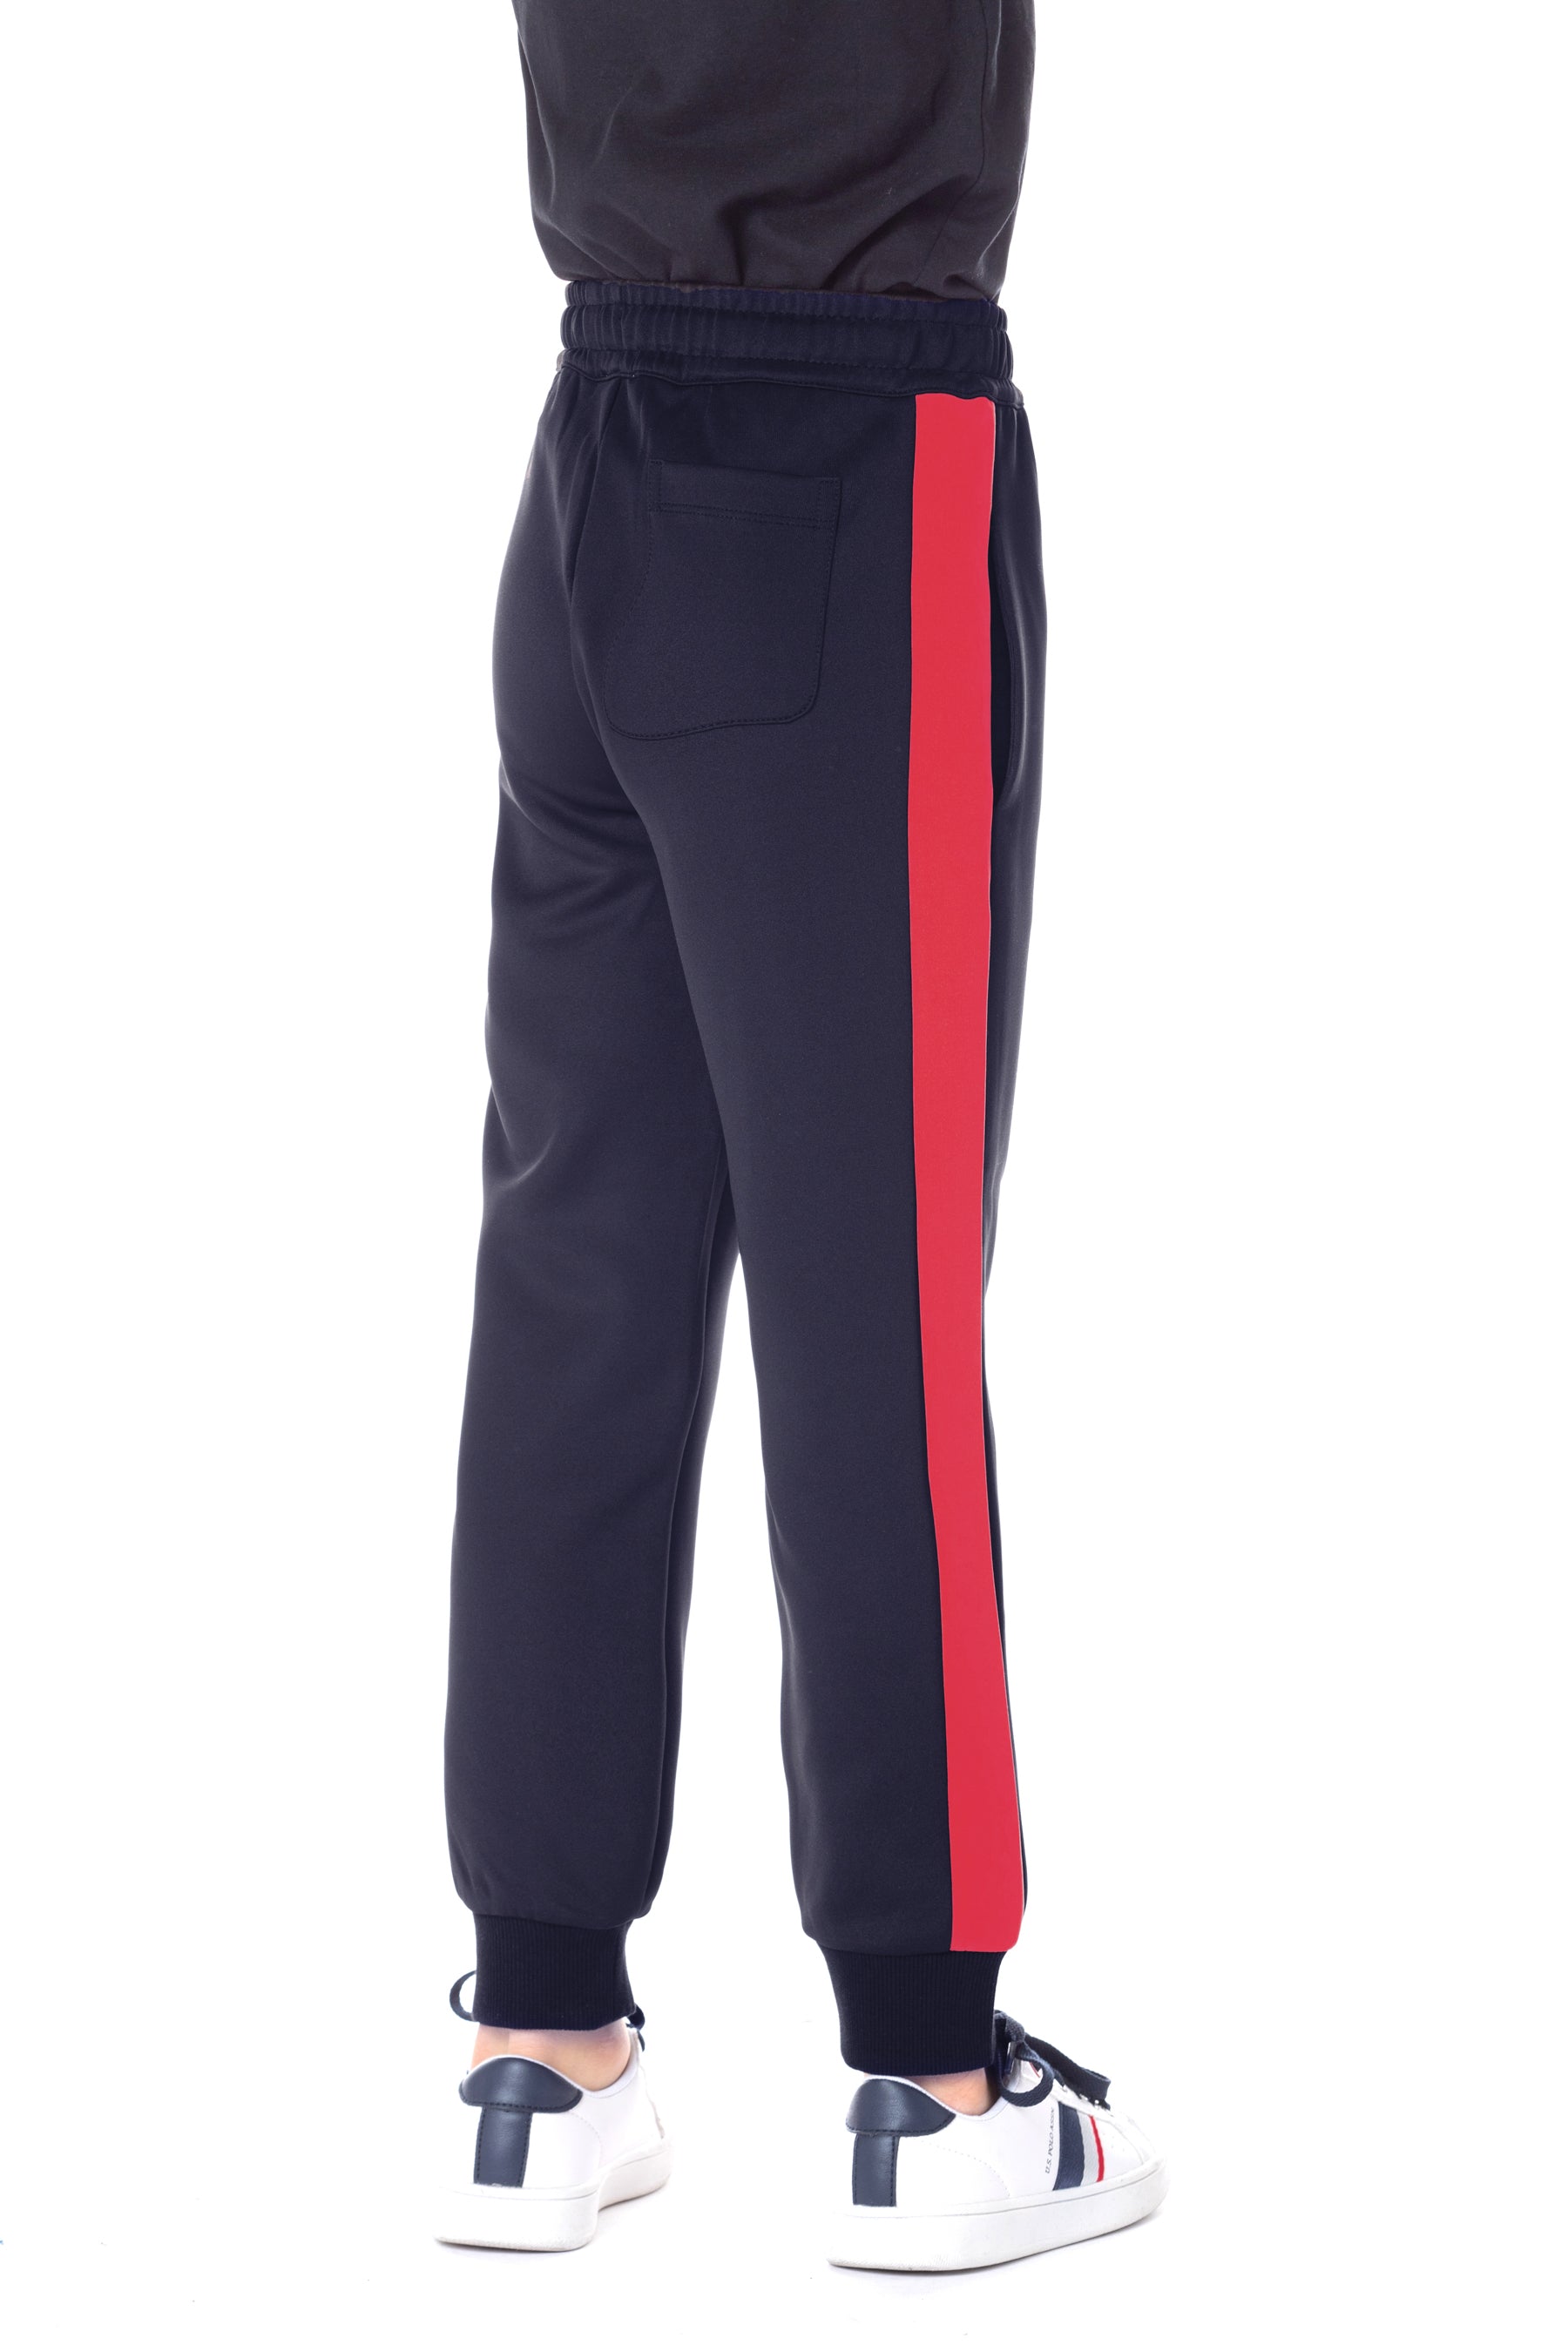 Pantalone sportivo da bambino con banda laterale e logo U.S. Polo Assn.